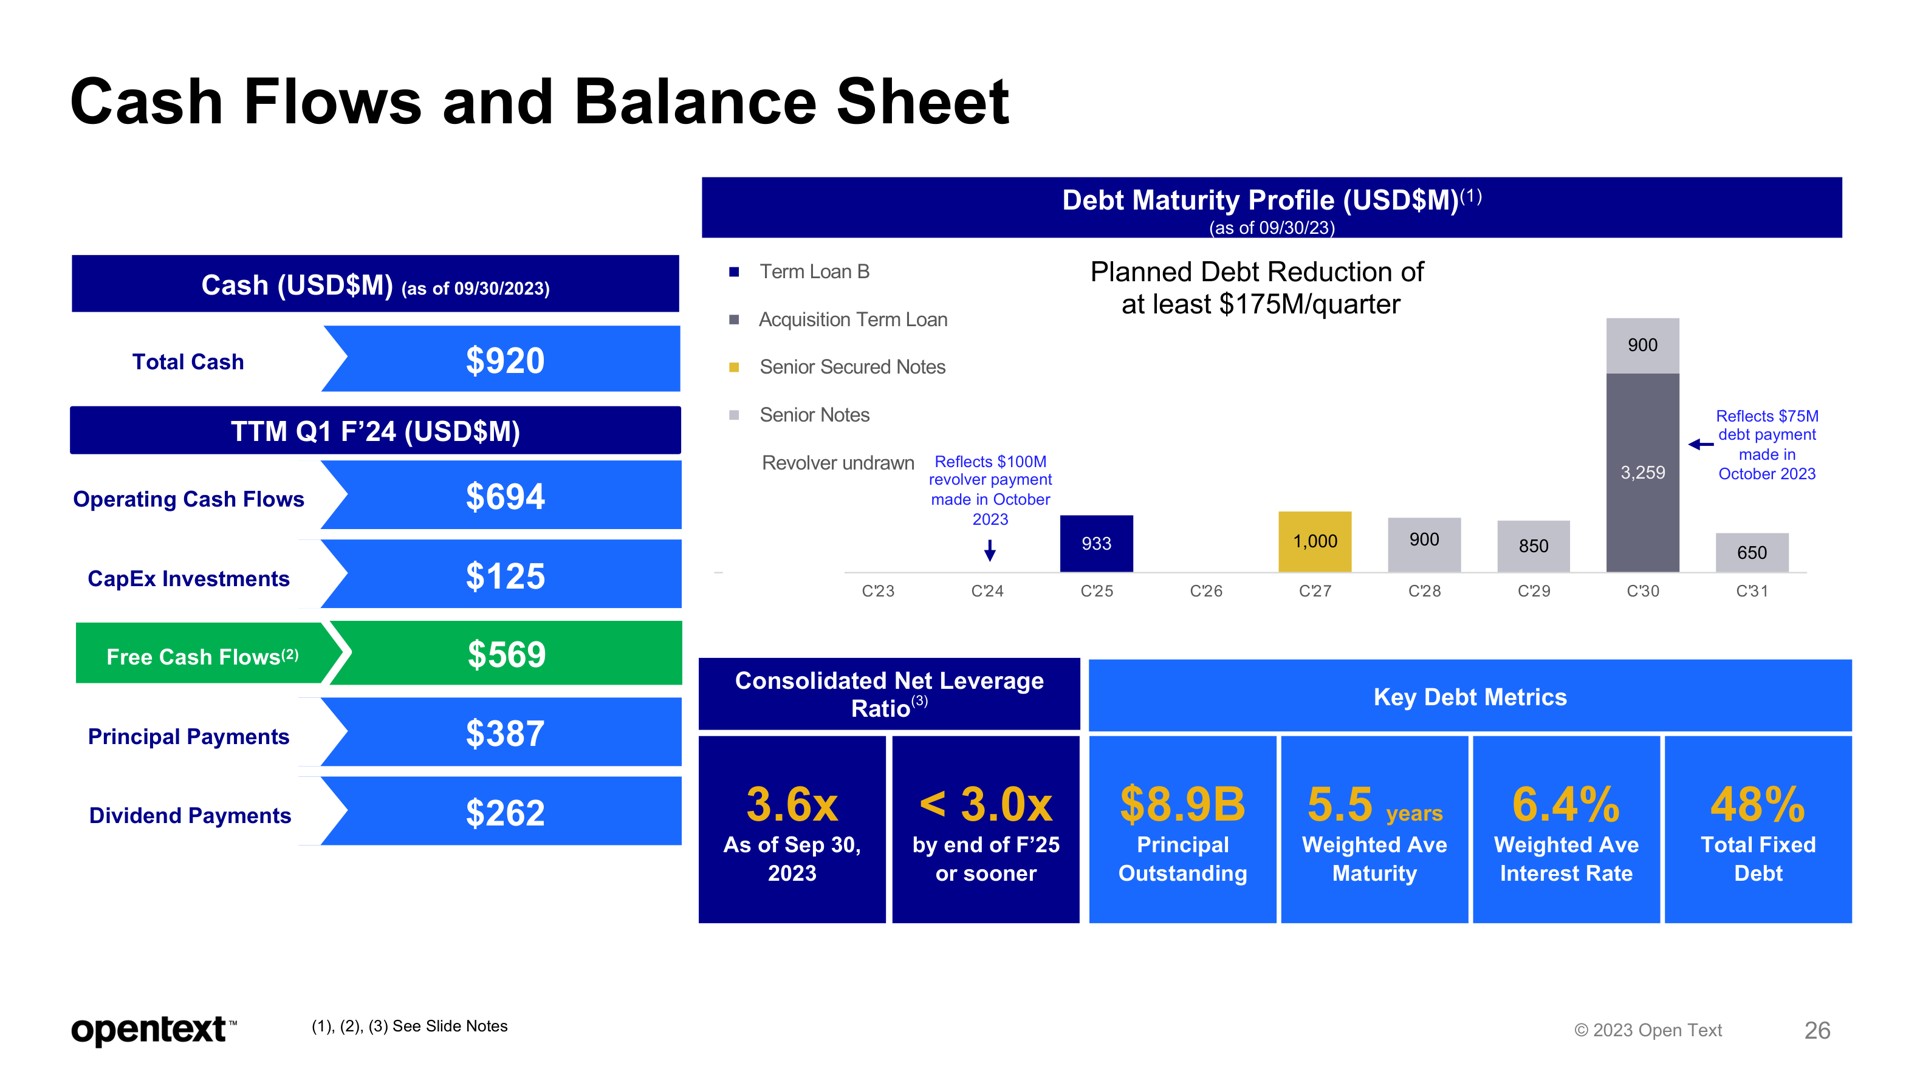 cash flows and balance sheet | OpenText